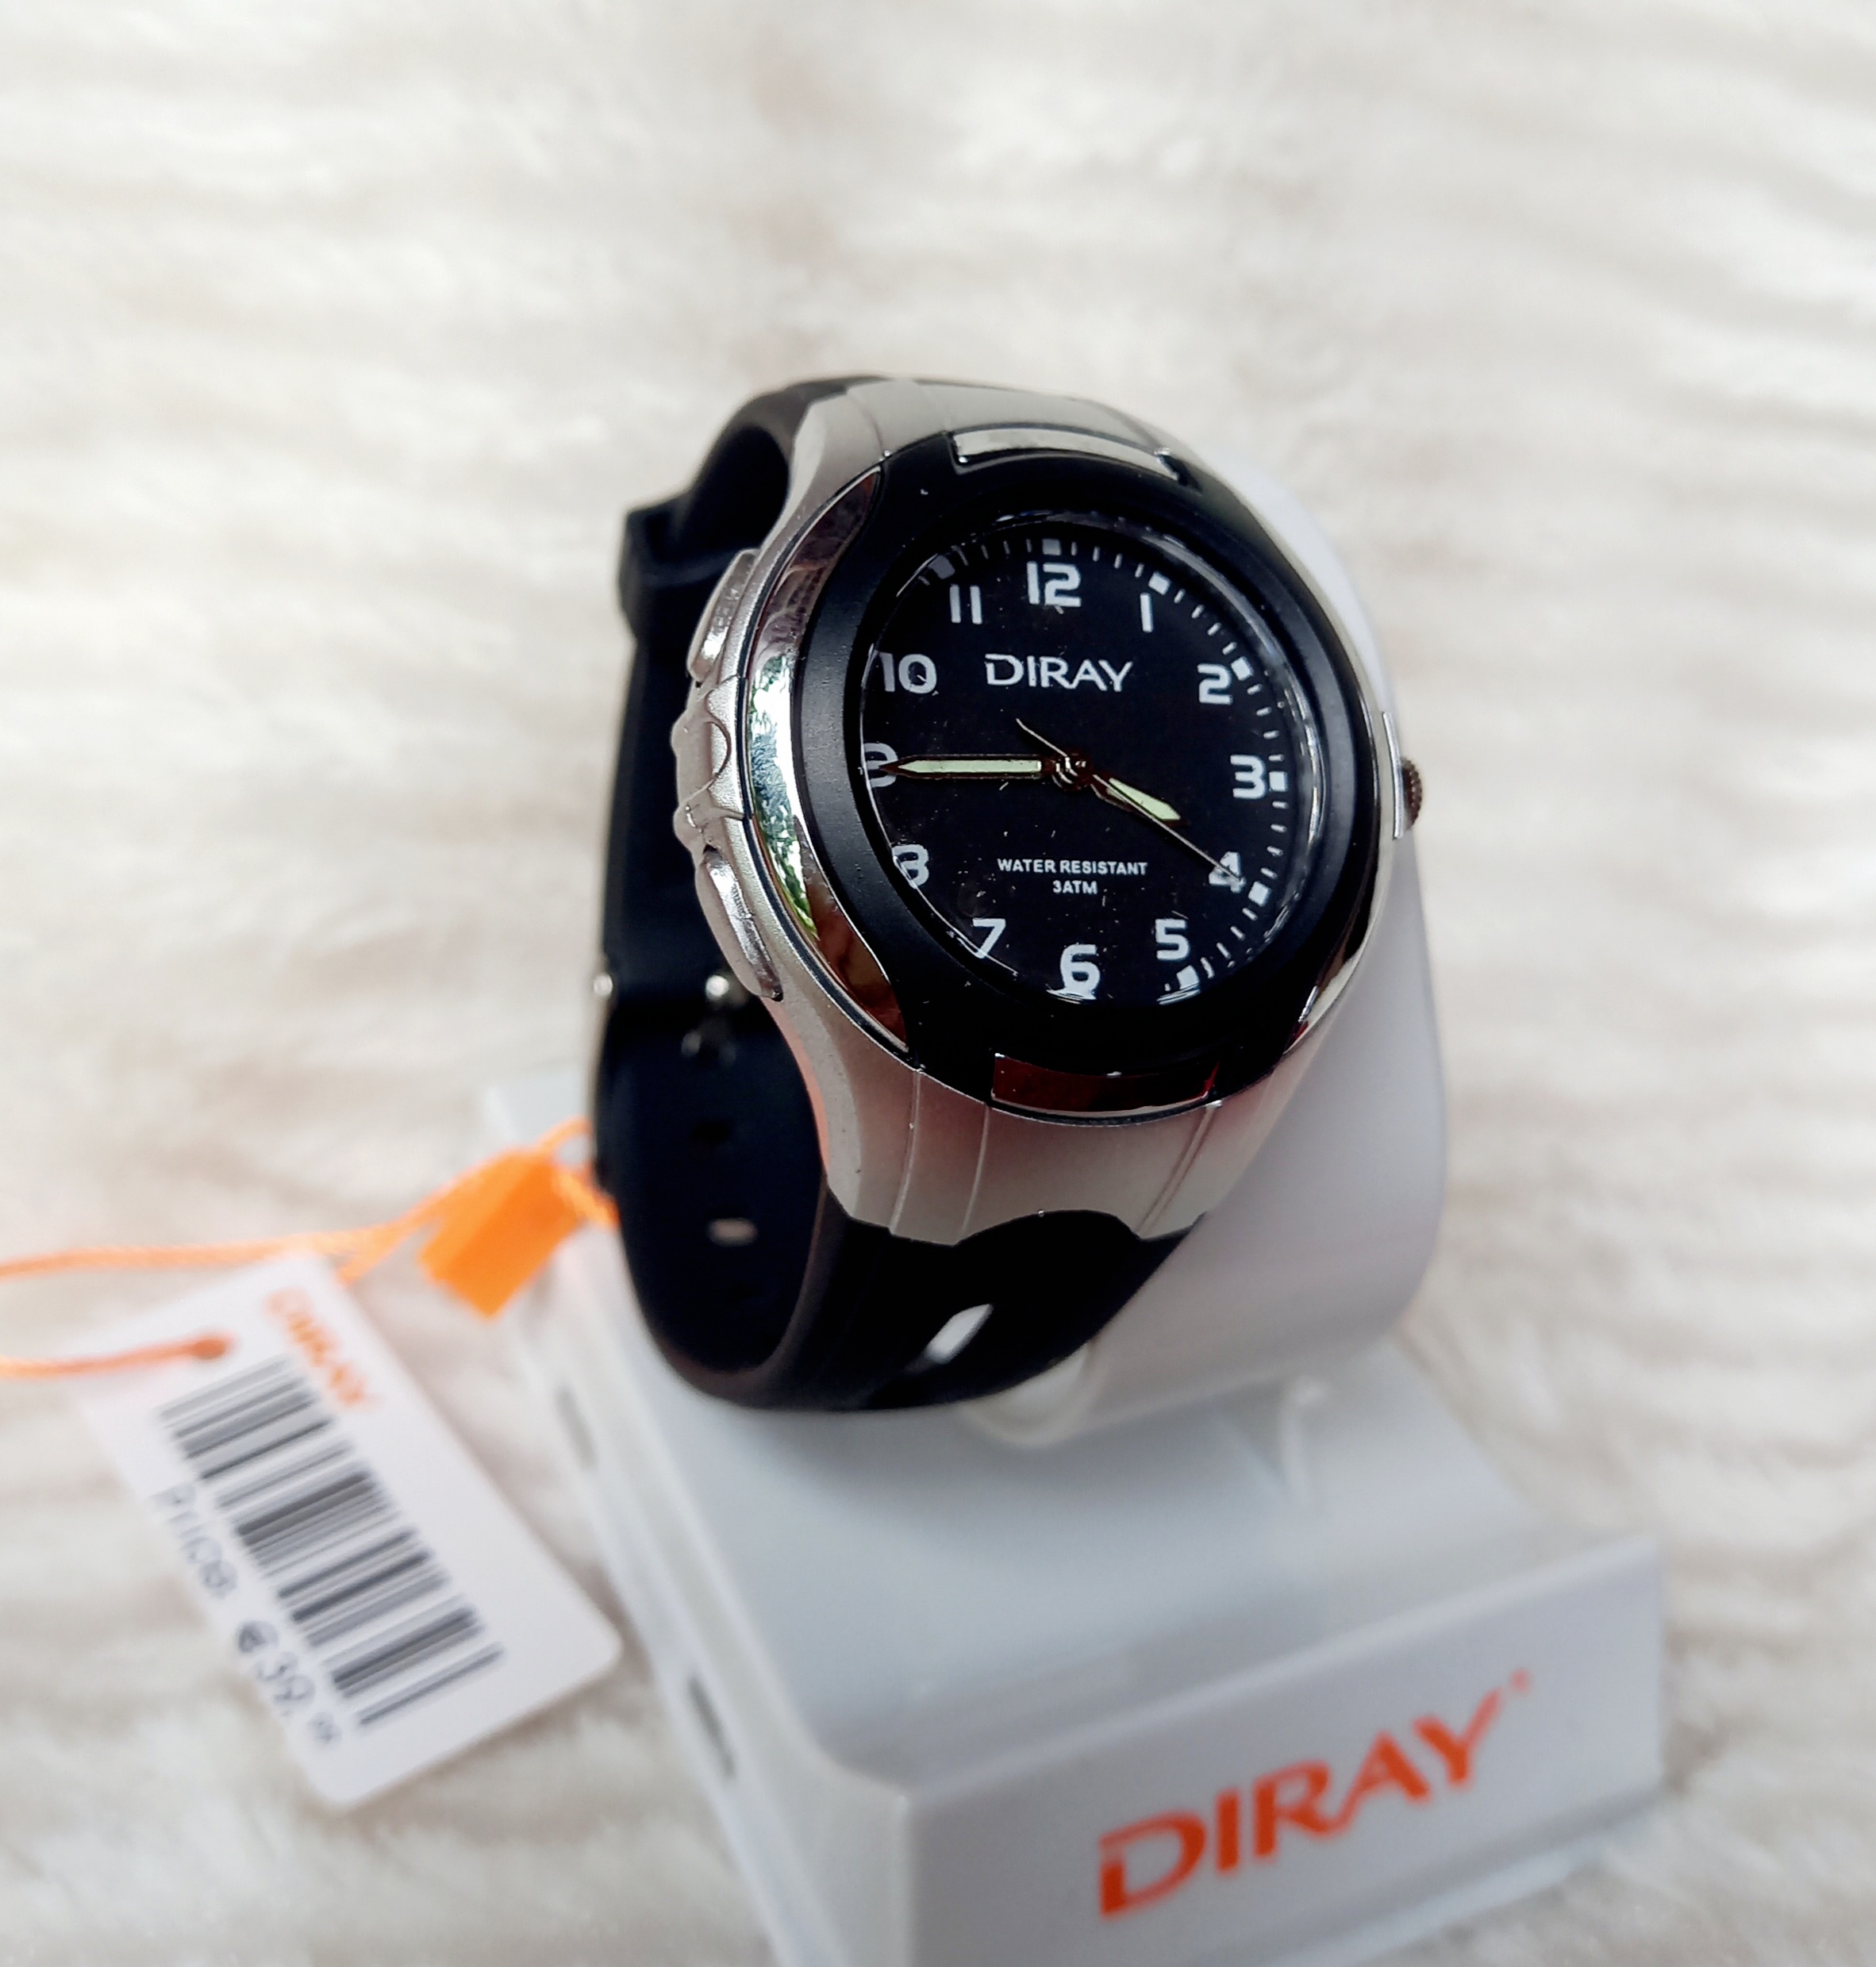 Đồng hồ trẻ em Diray chạy kim hàng chí.nh hãng chống nước, quai silicon màu đen